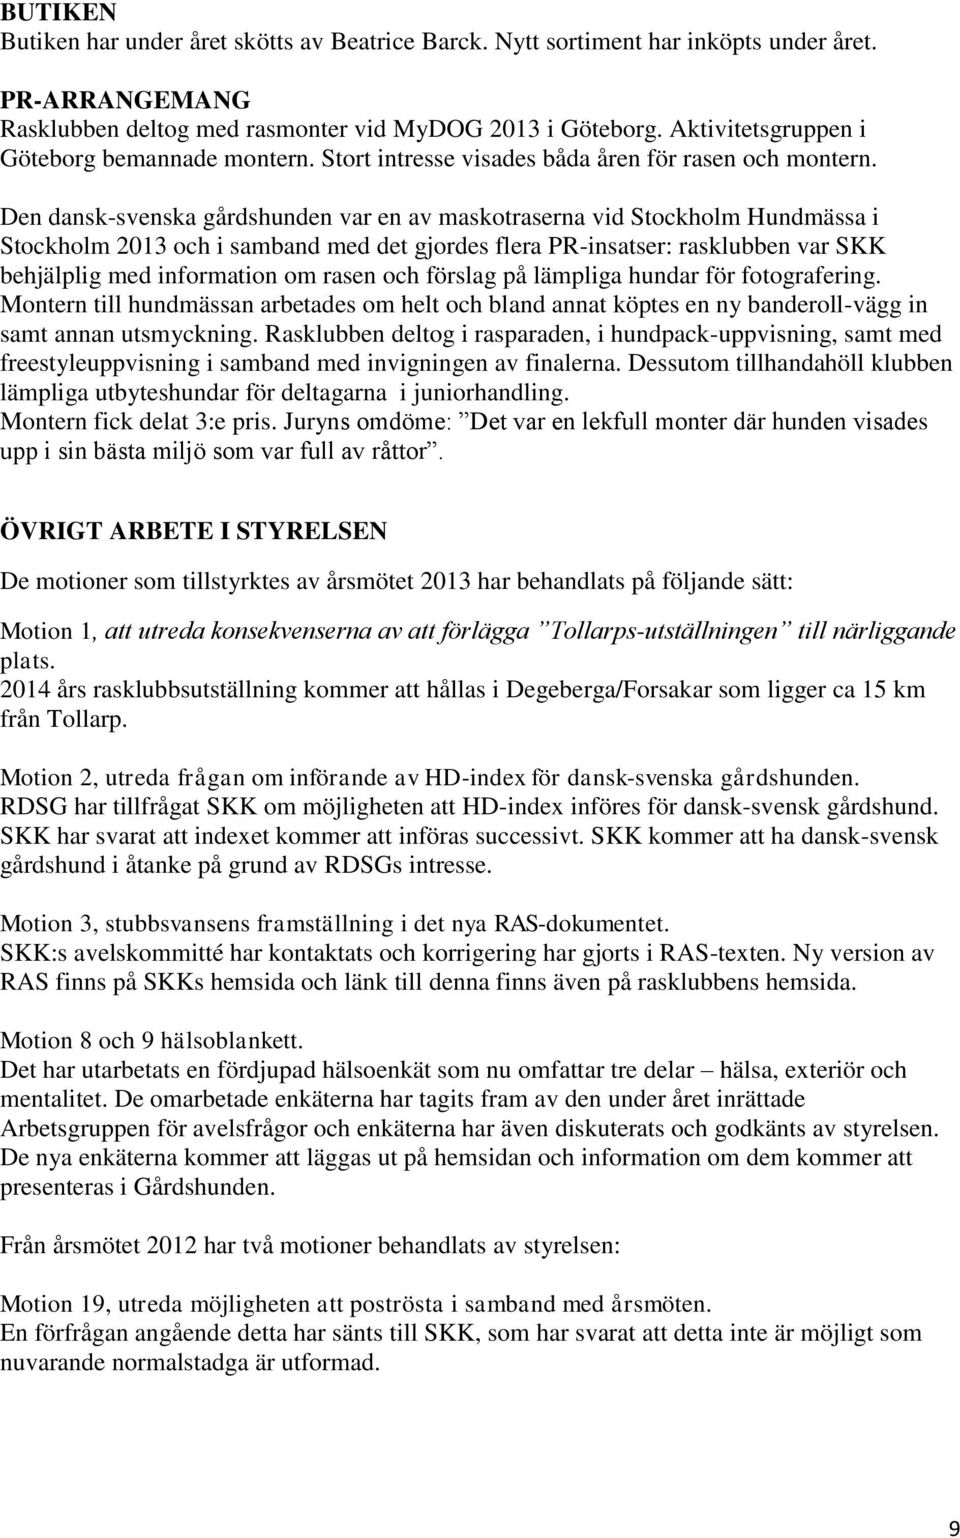 Den dansk-svenska gårdshunden var en av maskotraserna vid Stockholm Hundmässa i Stockholm 2013 och i samband med det gjordes flera PR-insatser: rasklubben var SKK behjälplig med information om rasen